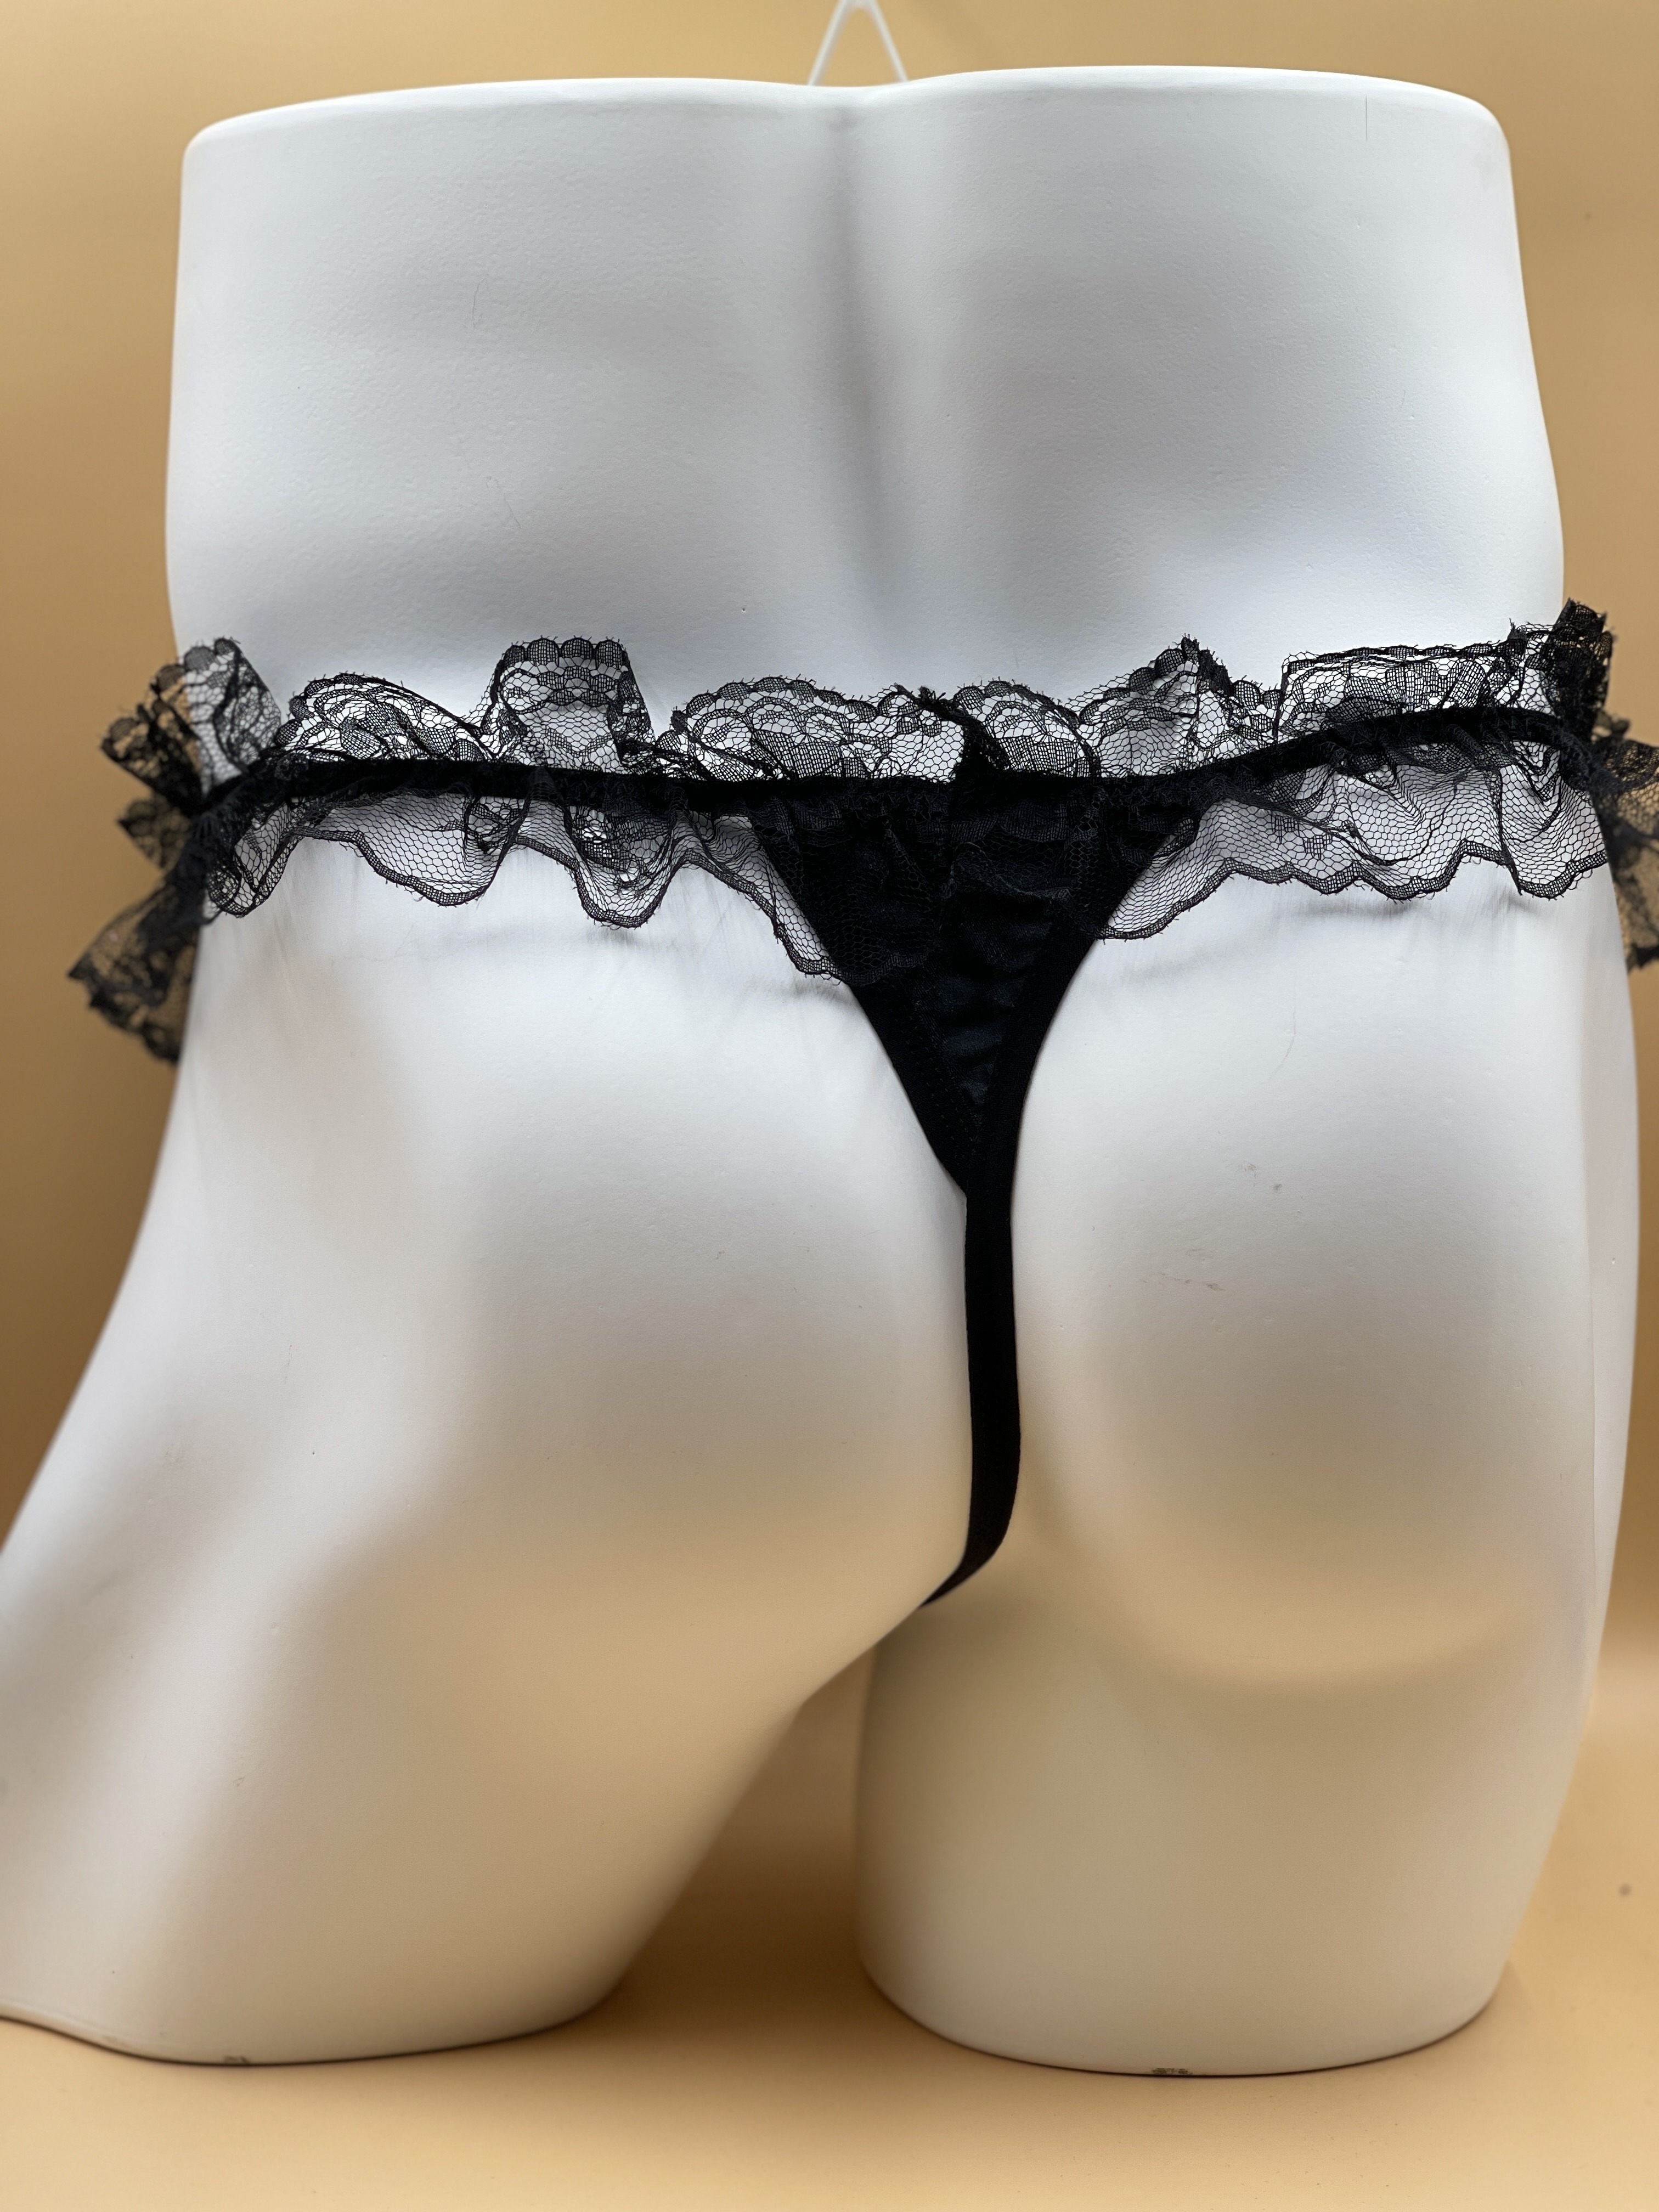 Men Novelty Elephant G-strings Panties Thongs Underwear Briefs